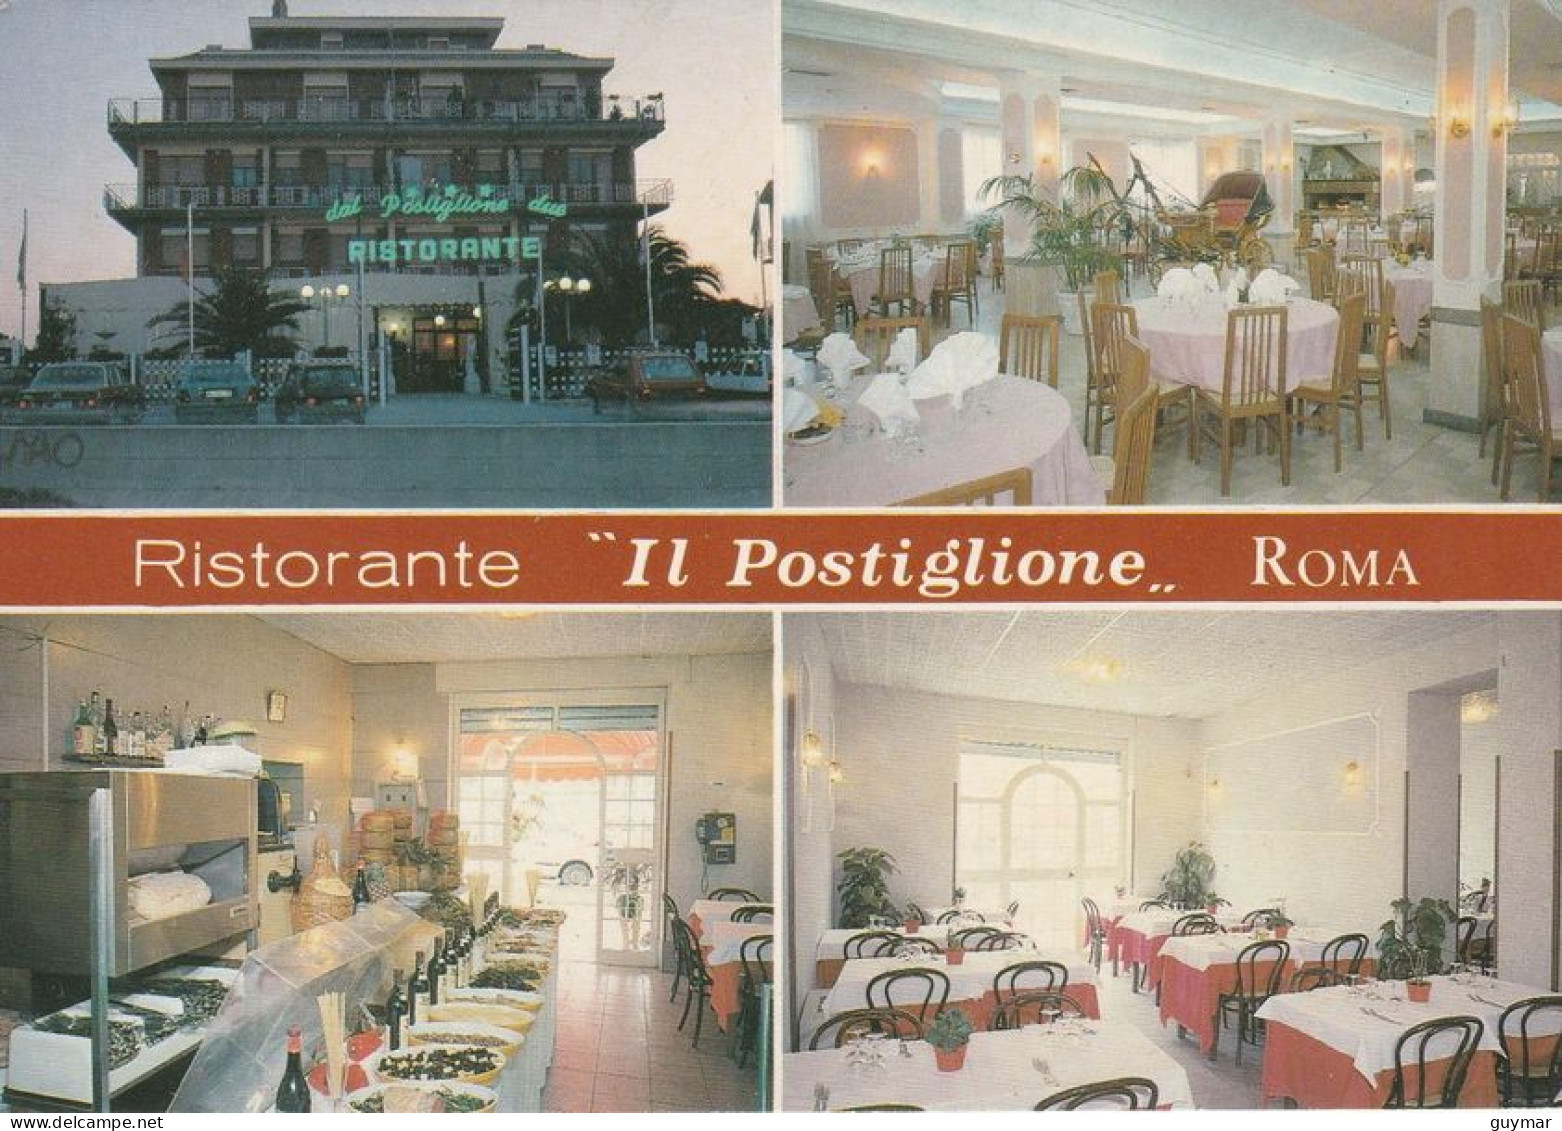 ROMA - RISTORANTE - IL POSTIGLIONE - 5566 - Cafes, Hotels & Restaurants